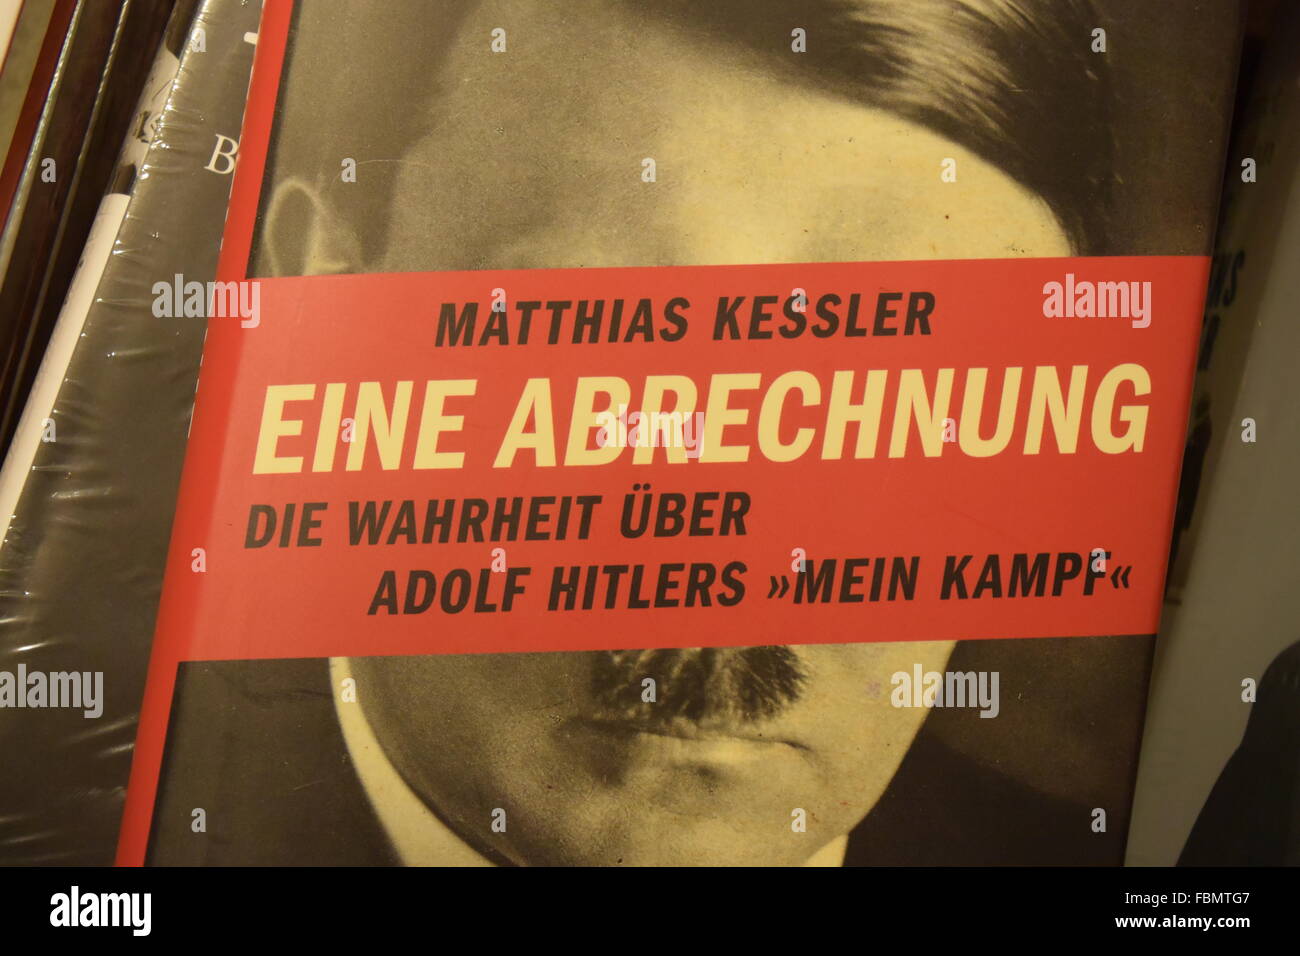 La couverture du livre 'Eine Abrechnung", de Matthias Kessler, un commentaire critique du livre 'Mein Kampf' d'Adolf Hitler Banque D'Images